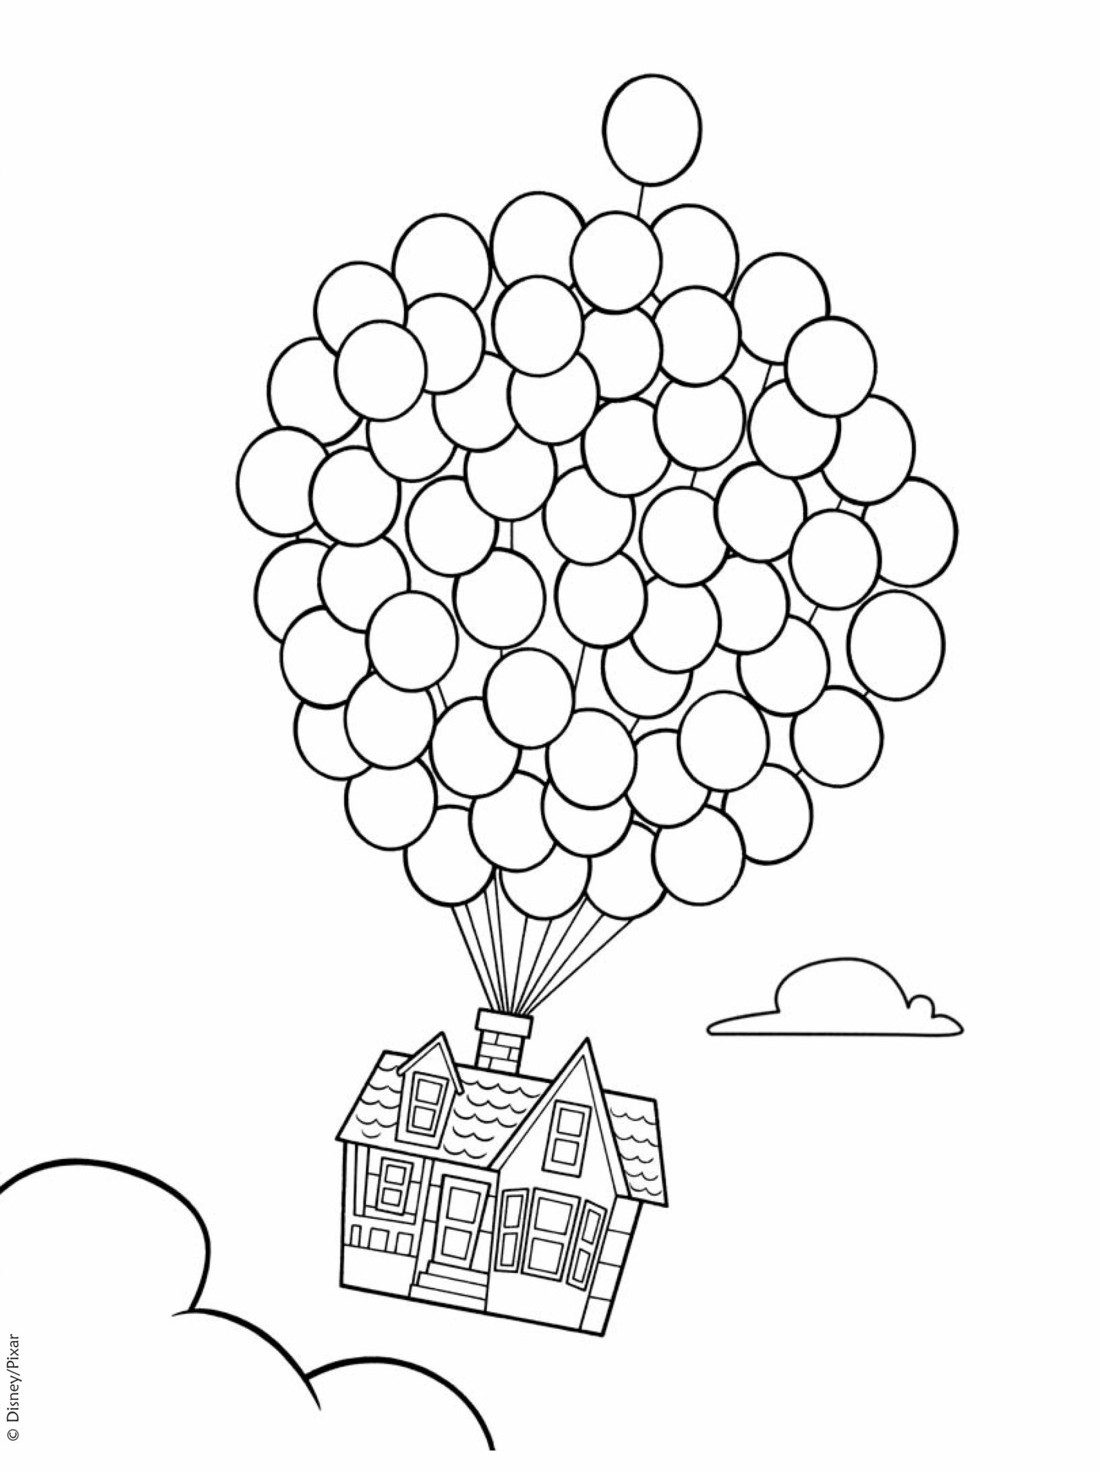 A casa dos 100.000 balões